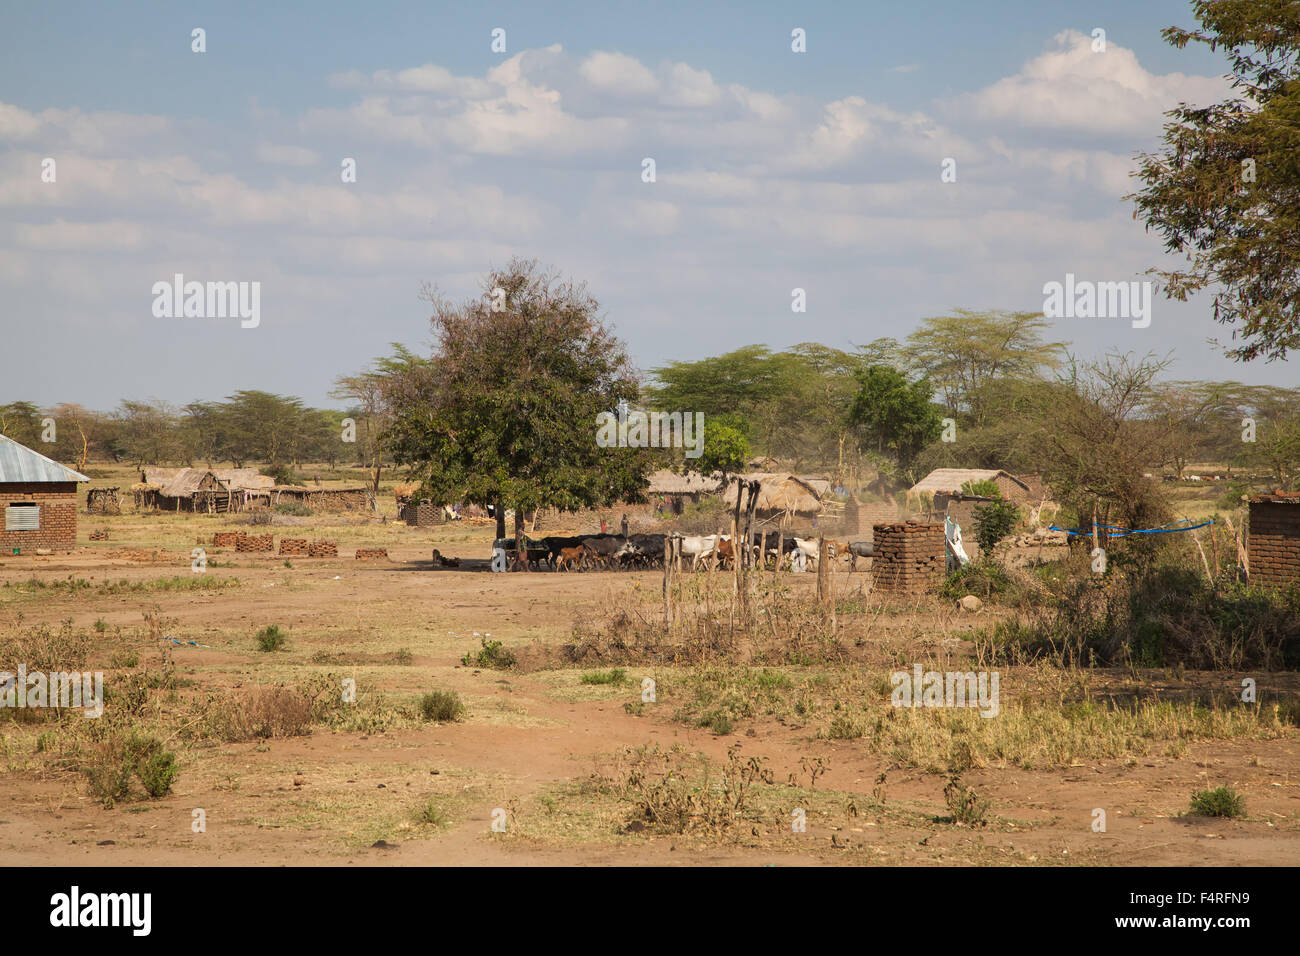 Afrika, Dorf, Haus, Haus, Haustiere, Häuser, Häuser, Landschaft, Landschaft, Reisen, Tansania Stockfoto